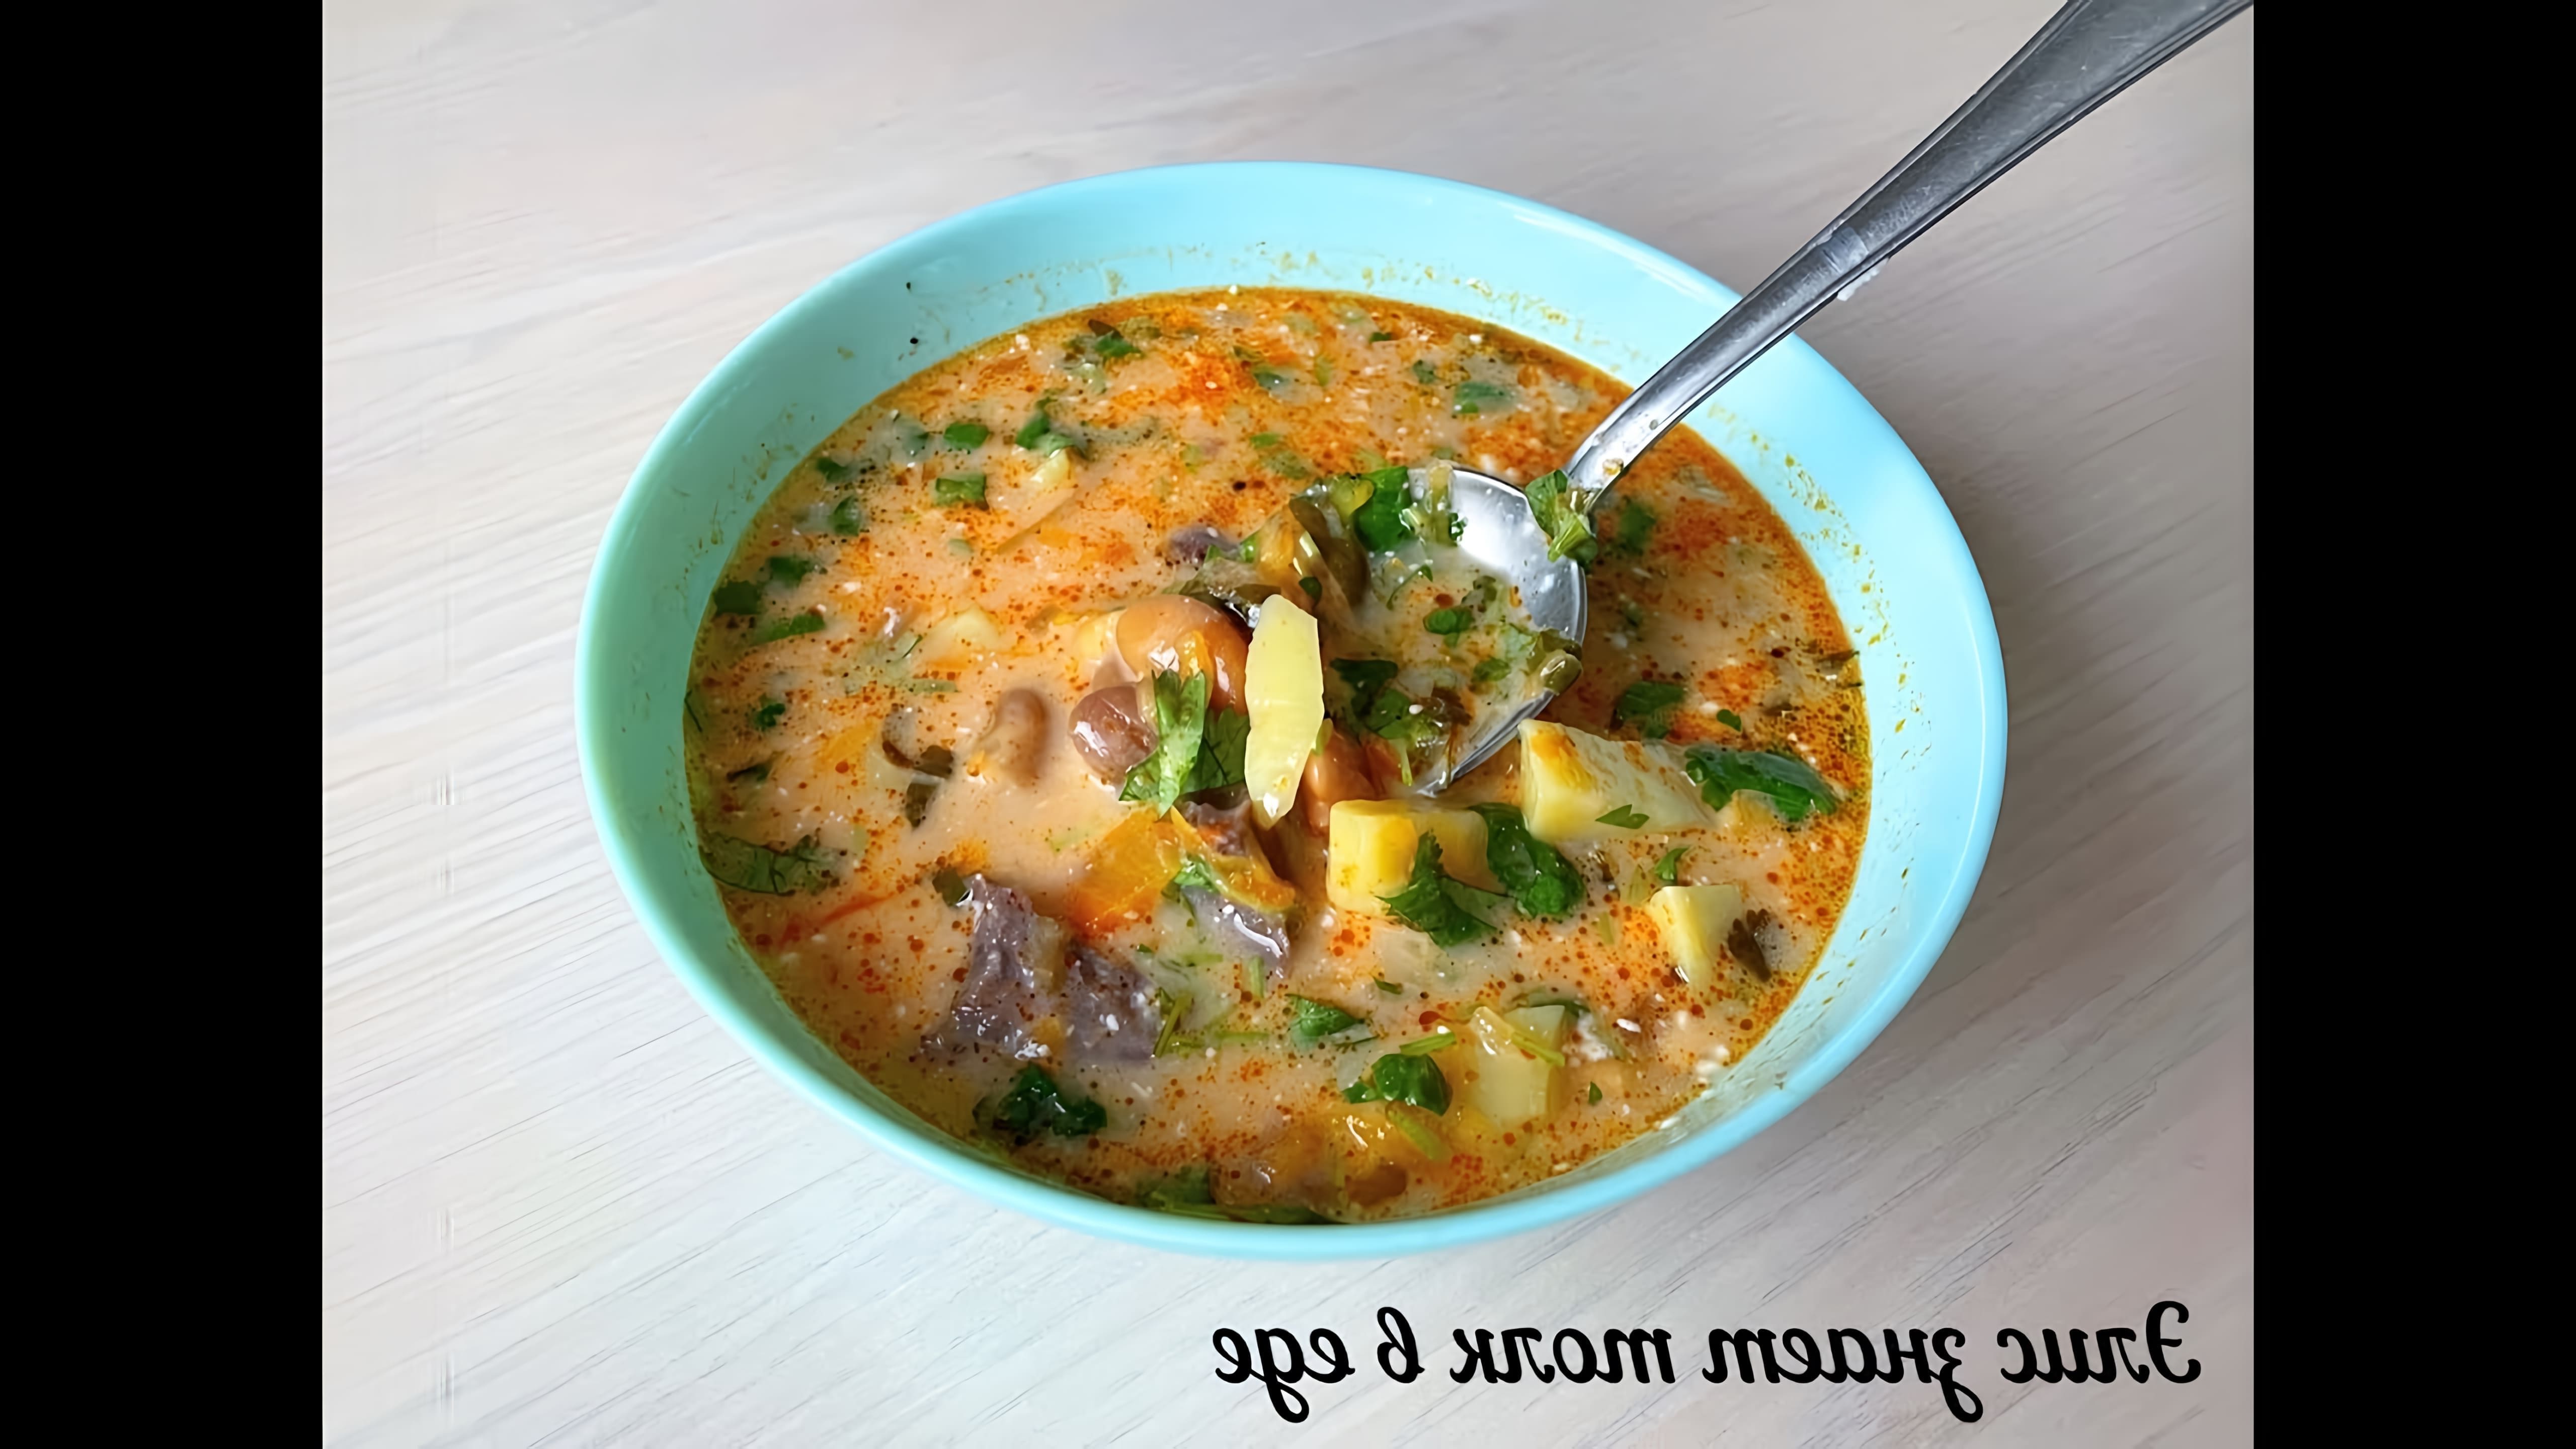 Суп готовится из консервированных бобов, картофеля, моркови, лука и говяжьего бульона в качестве основных ингредиентов